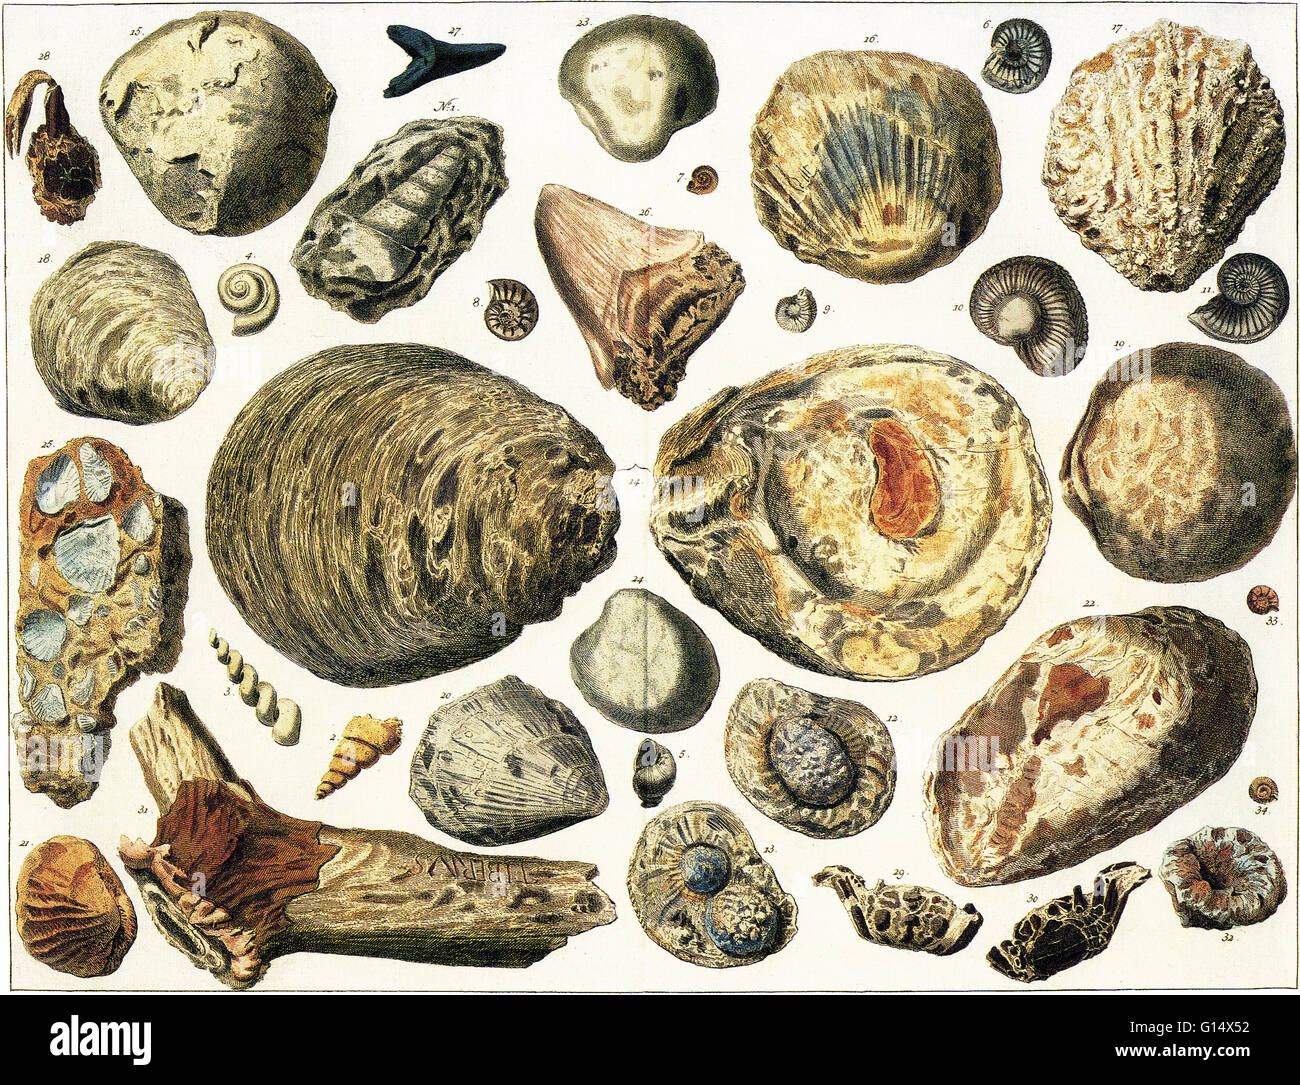 Ilustración de conchas marinas petrificadas y otros fósiles, en gran parte excavado en Alemania. Foto de stock